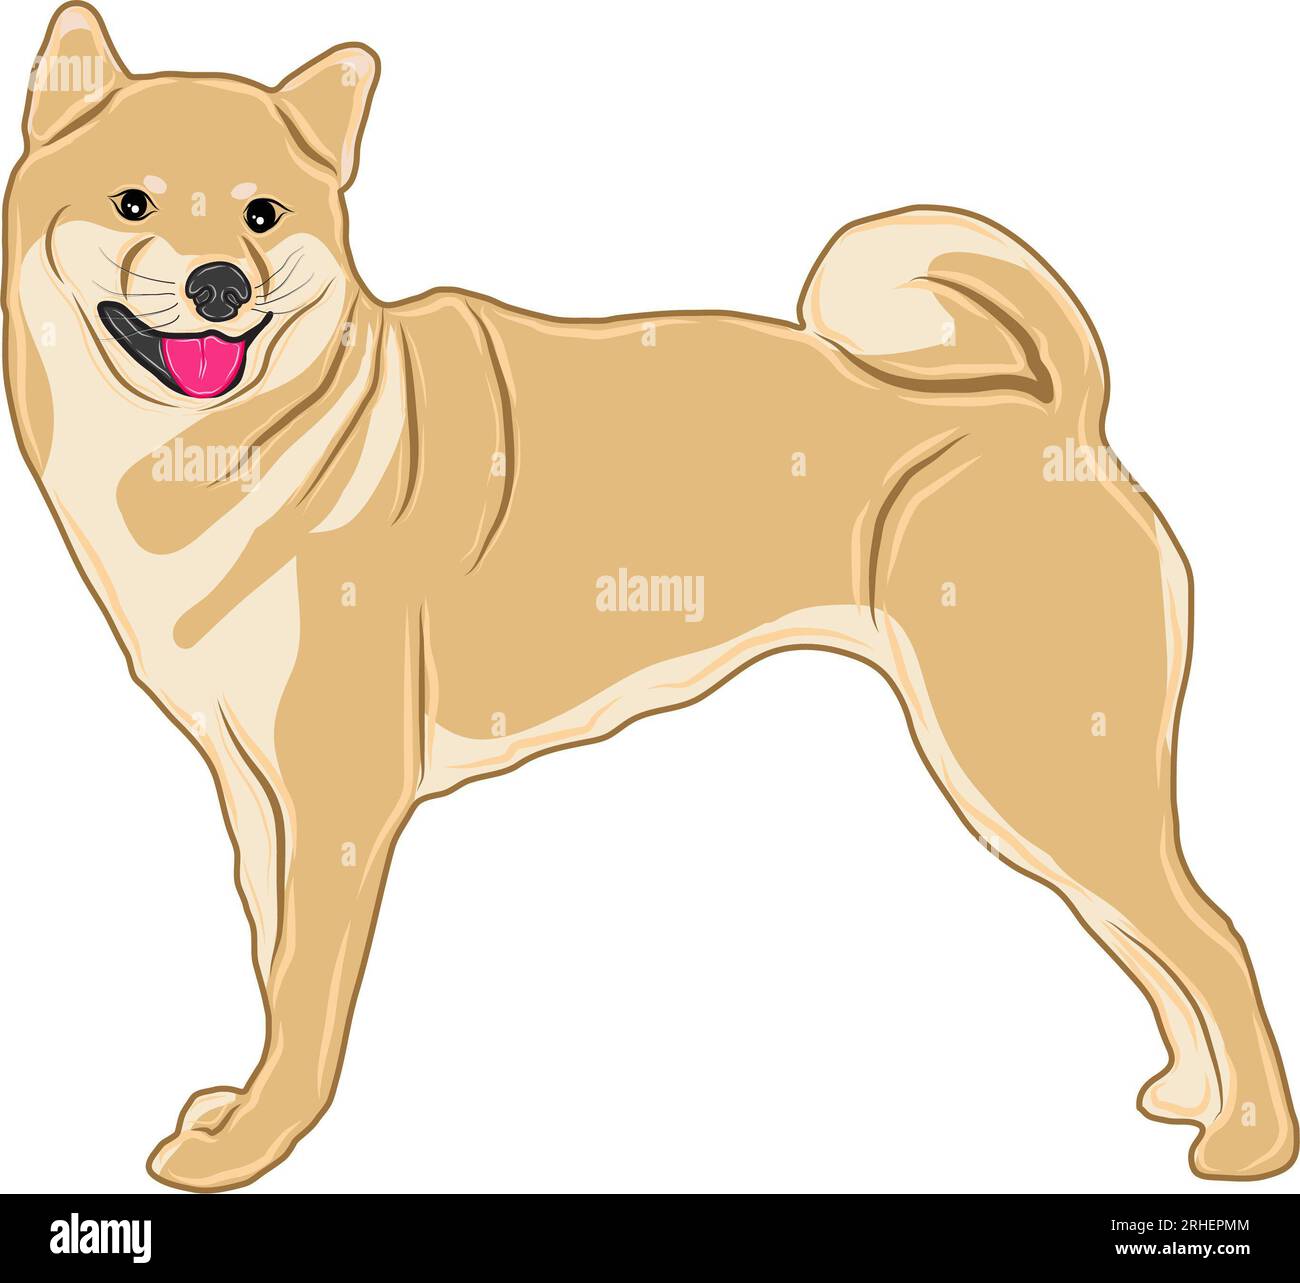 Immagine vettoriale o illustrazione di una razza di cane shiba-inu, nota anche come inu, in piedi e sorridente. Foto Stock